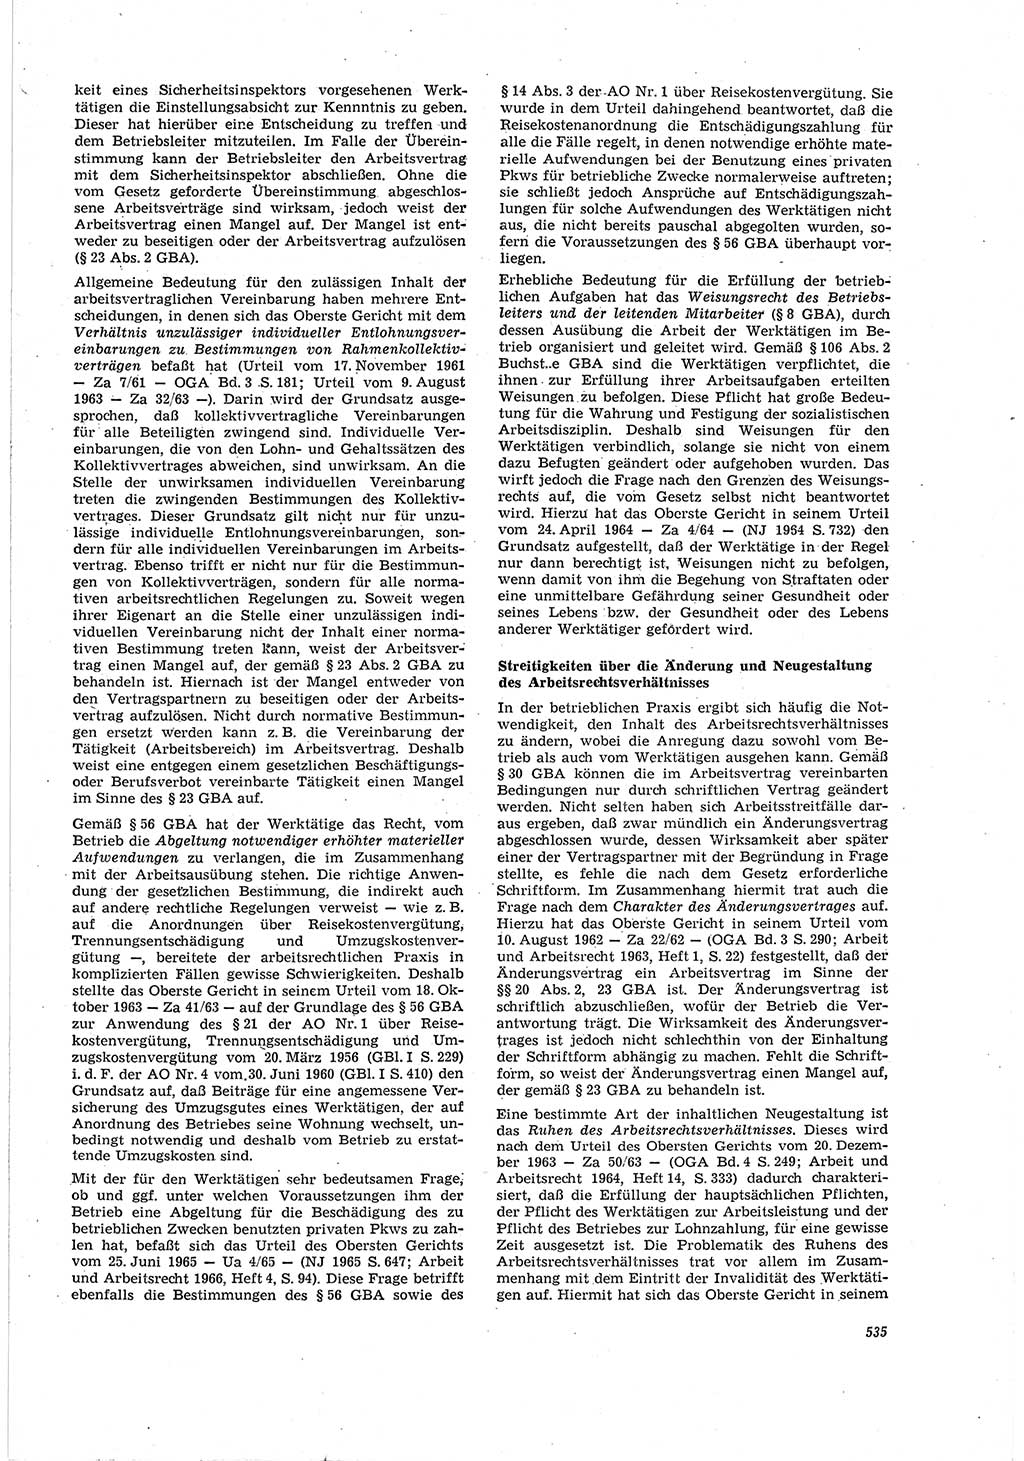 Neue Justiz (NJ), Zeitschrift für Recht und Rechtswissenschaft [Deutsche Demokratische Republik (DDR)], 20. Jahrgang 1966, Seite 535 (NJ DDR 1966, S. 535)